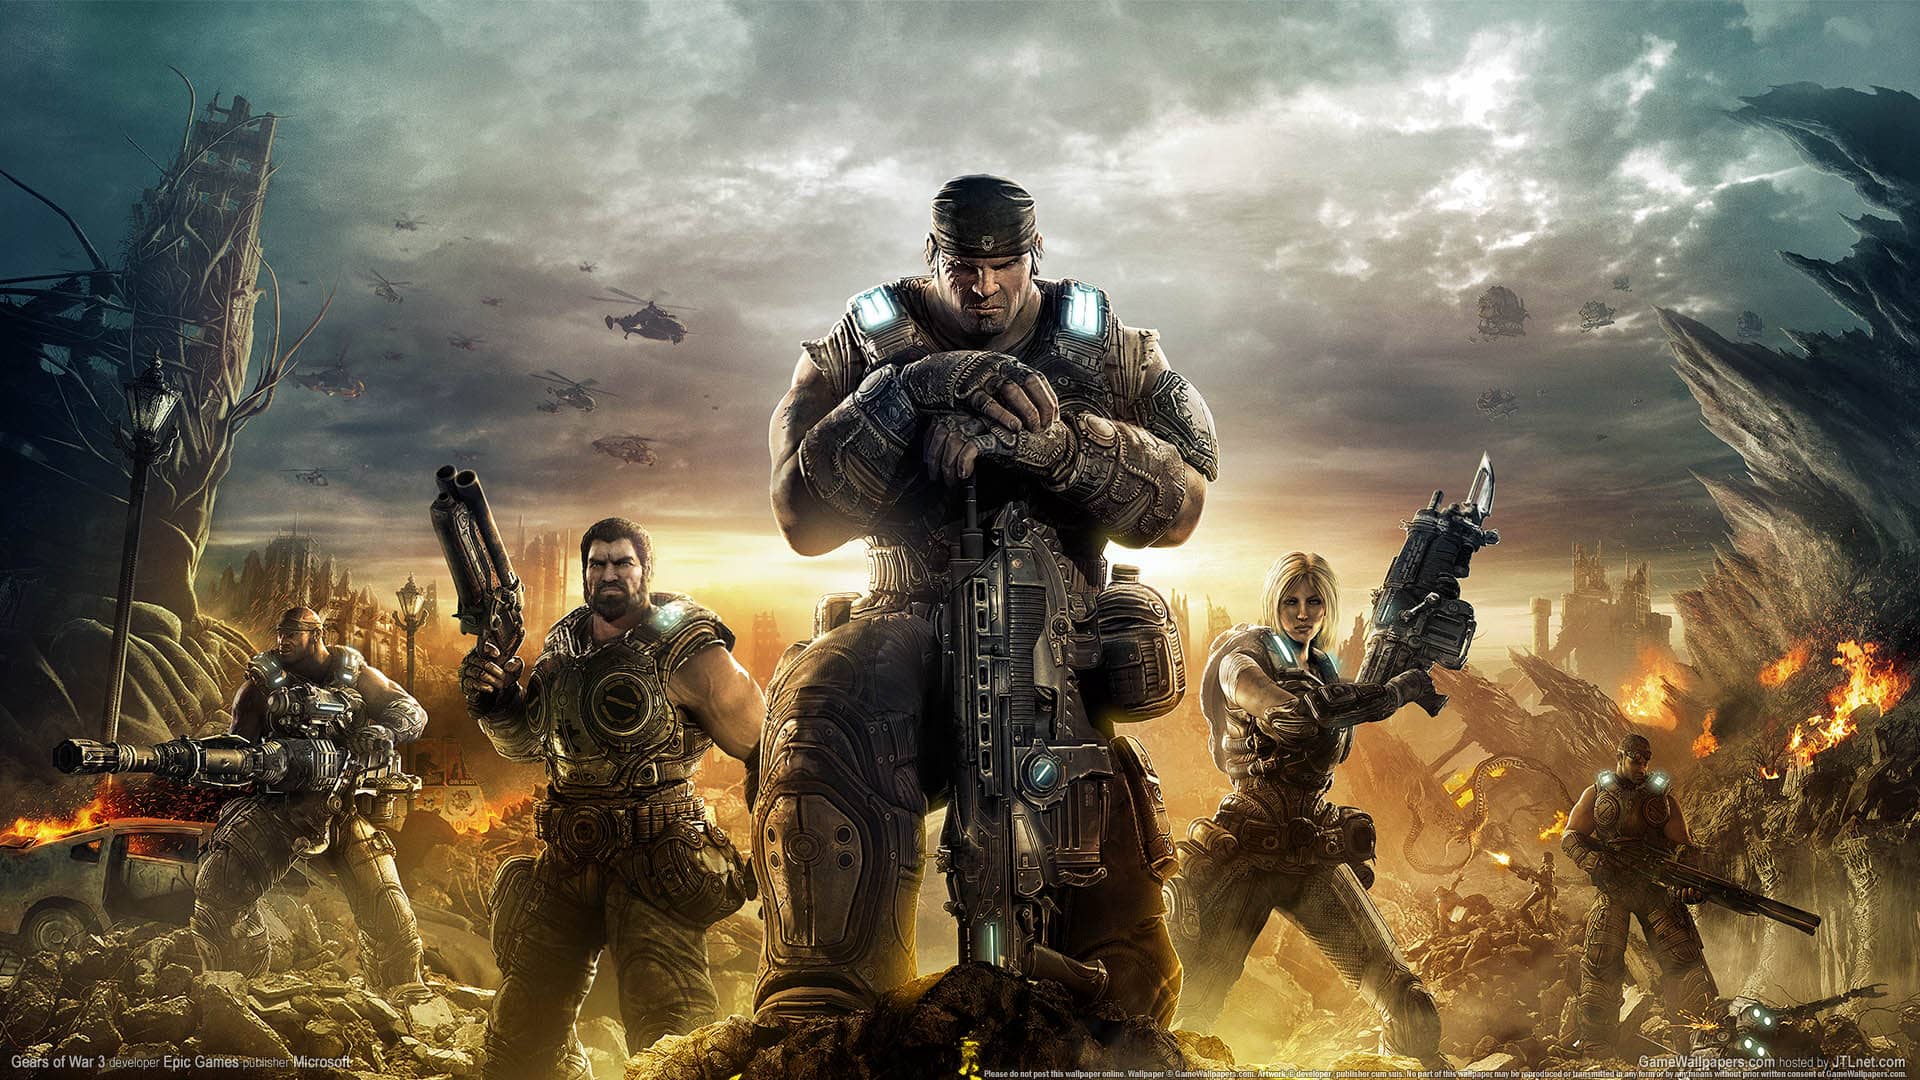 نسخه کالکشن بازی Gears of War احتمالا به زودی منتشر خواهد شد - نقادانه